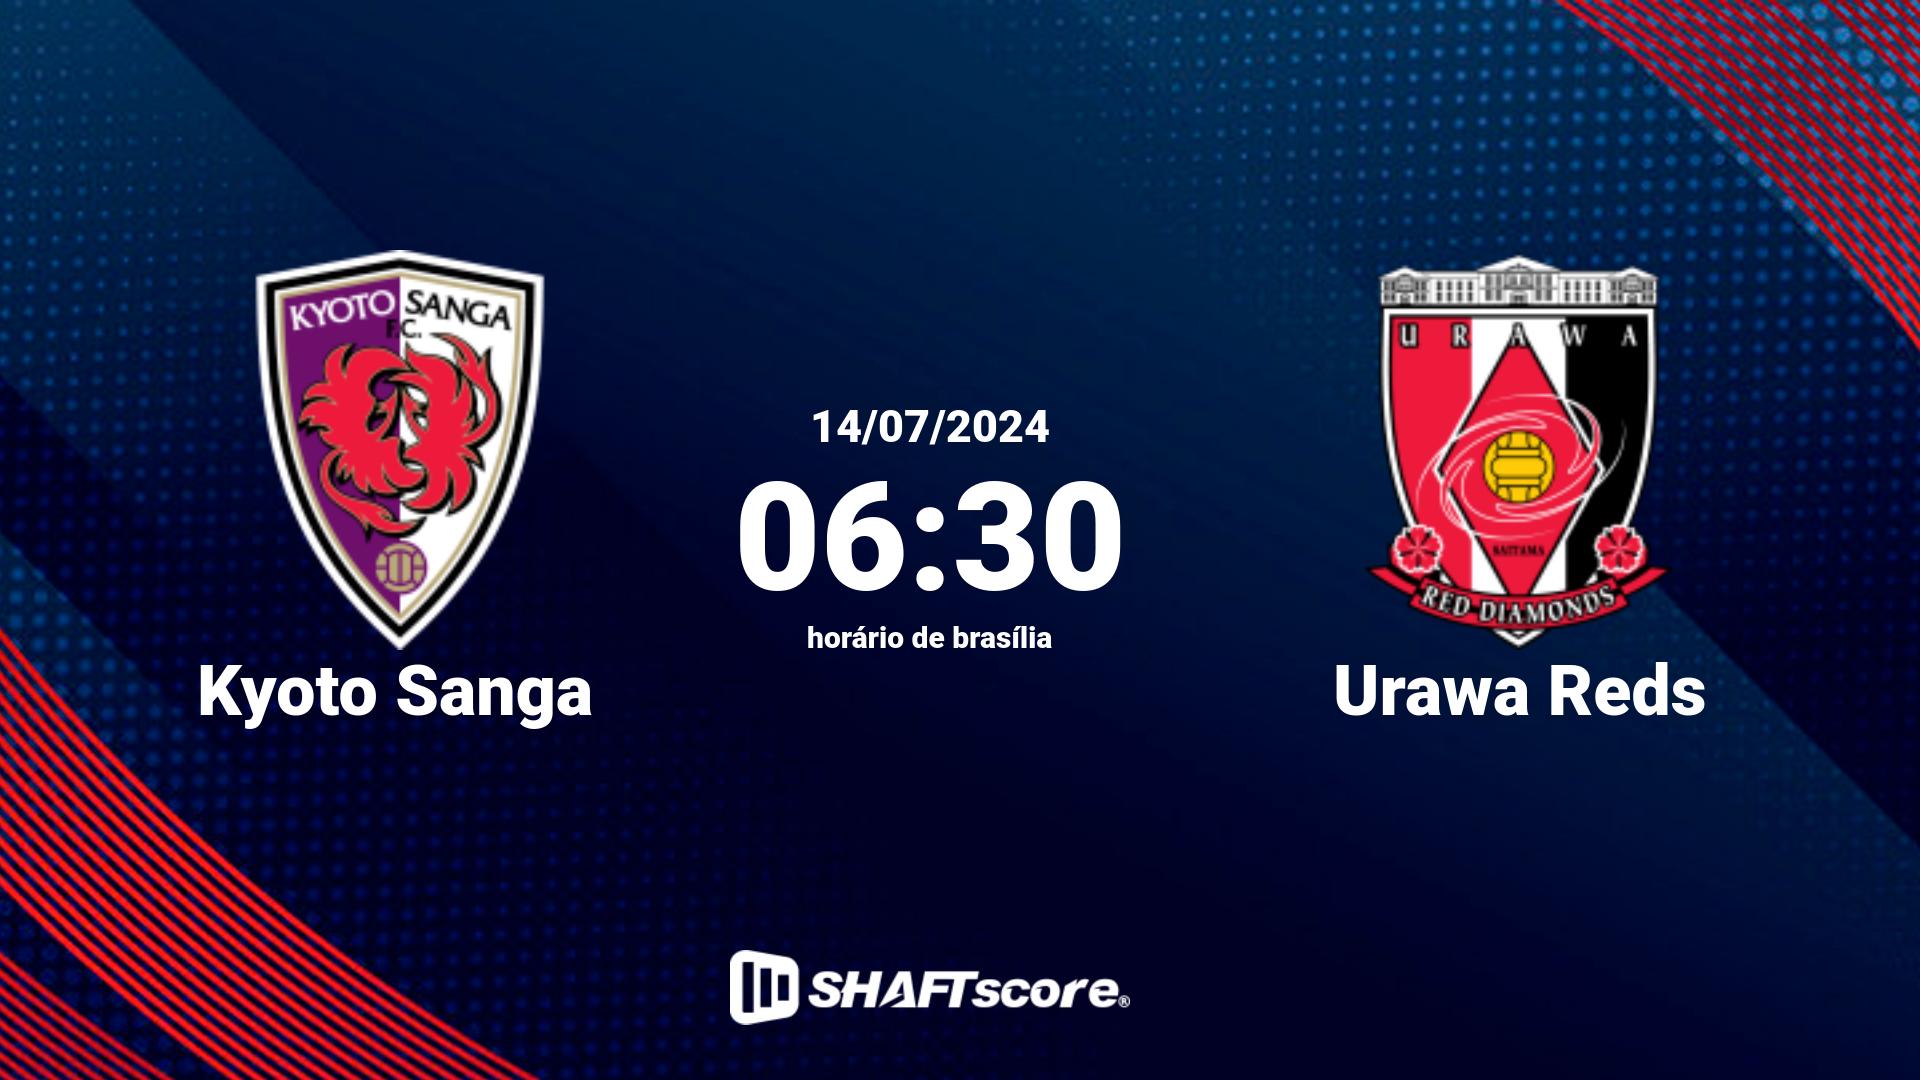 Estatísticas do jogo Kyoto Sanga vs Urawa Reds 14.07 06:30